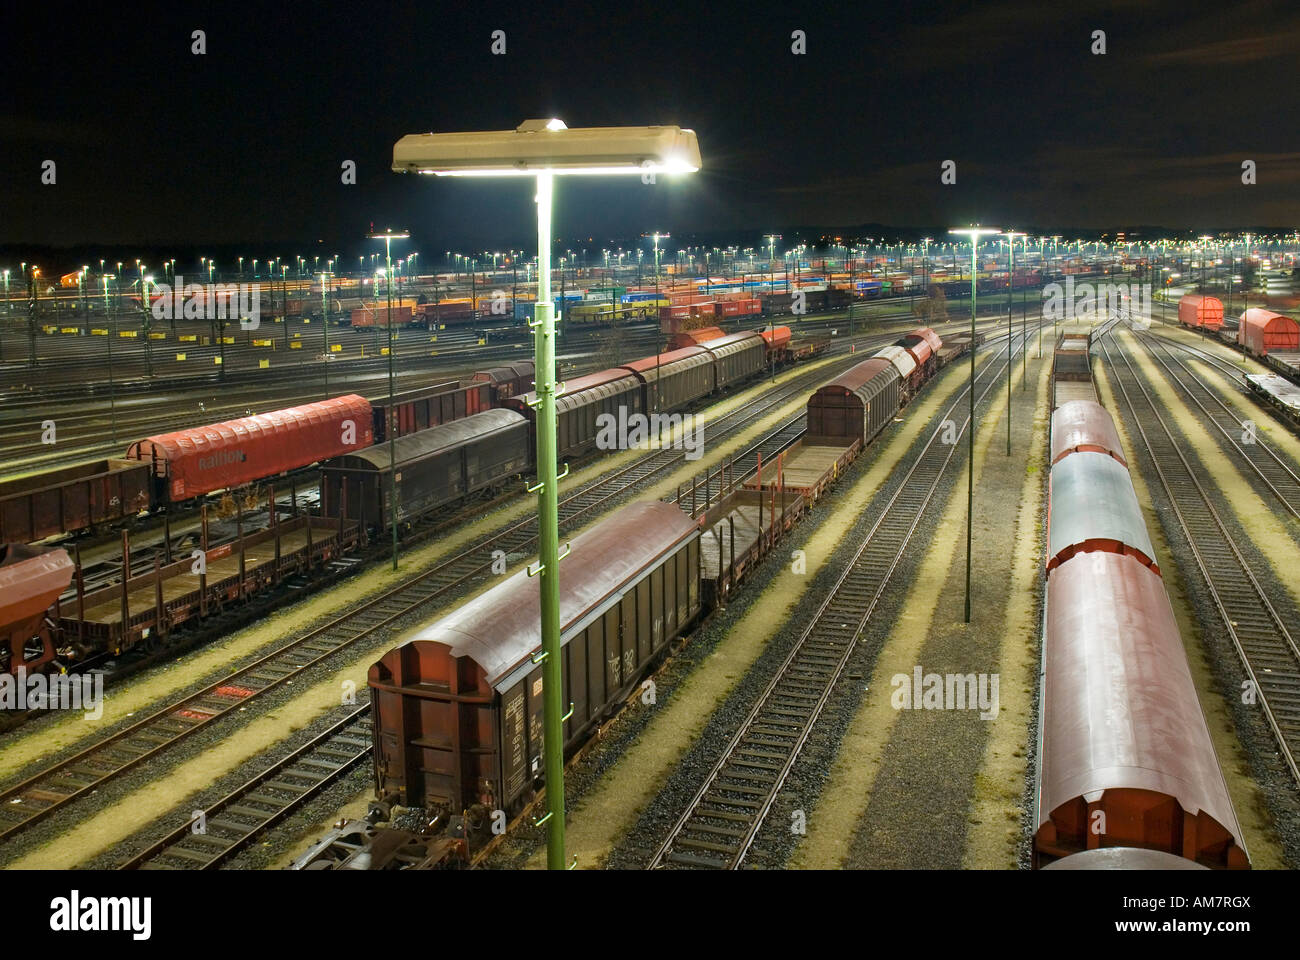 Parcheggia i treni merci a Maschen smistamento ferroviario cantiere nei pressi di Amburgo di notte, Bassa Sassonia, Germania Foto Stock